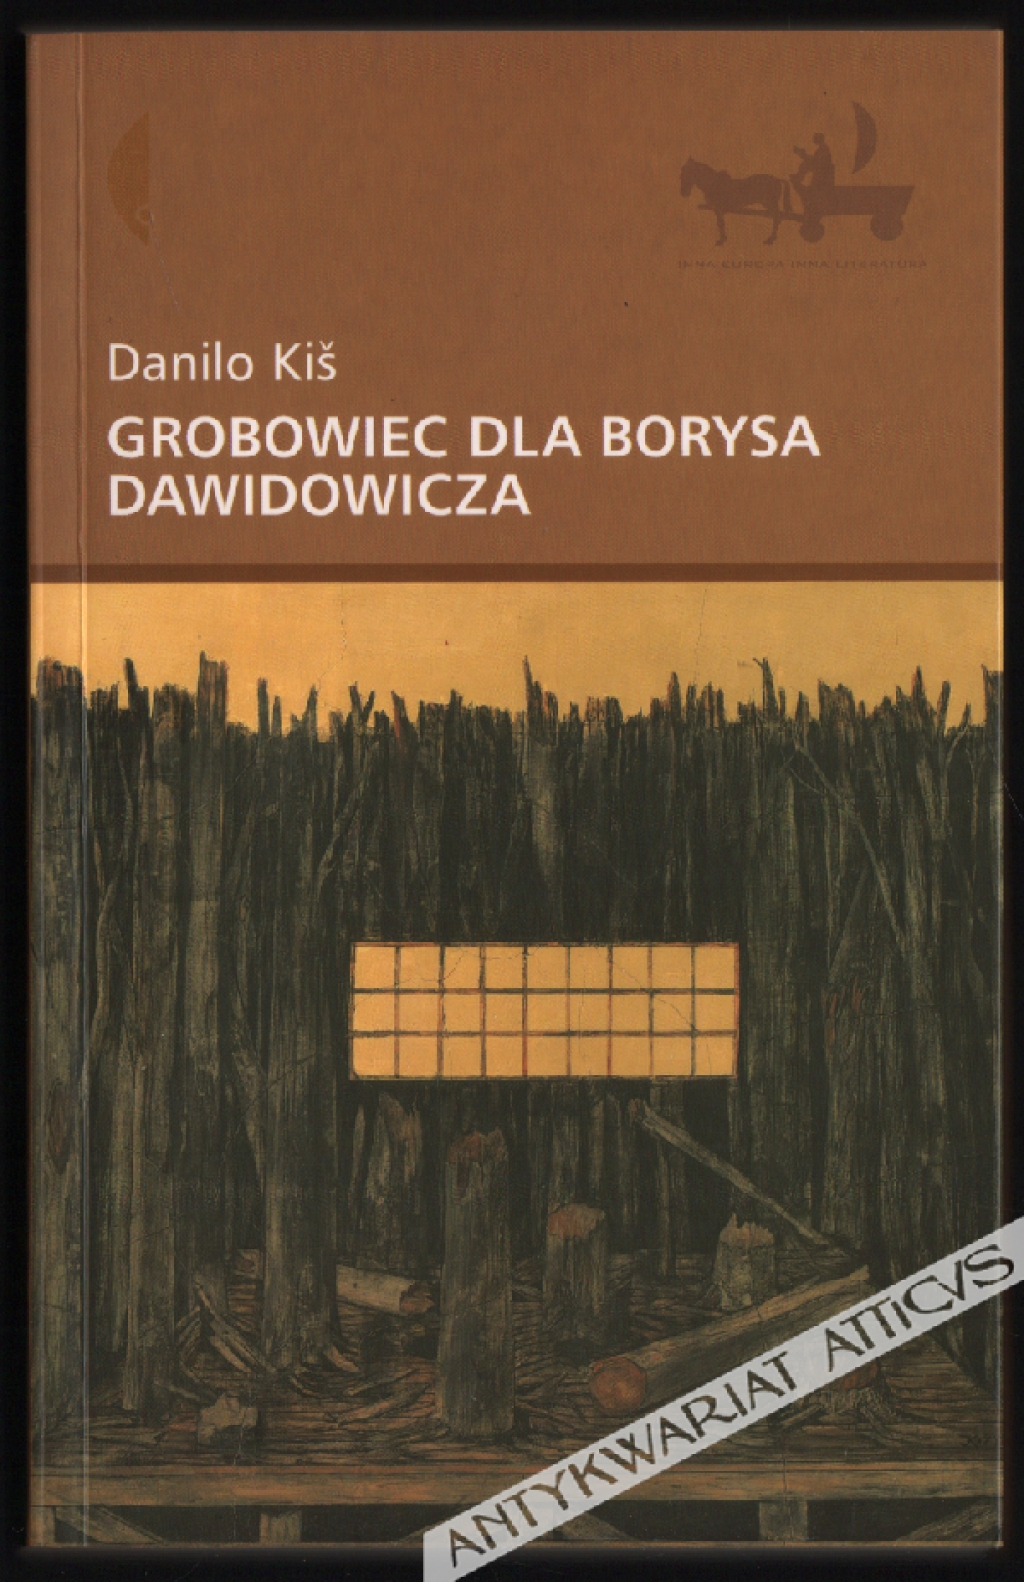 Grobowiec dla Borysa Dawidowicza. Siedem rozdziałów wspólnej historii. Powieść